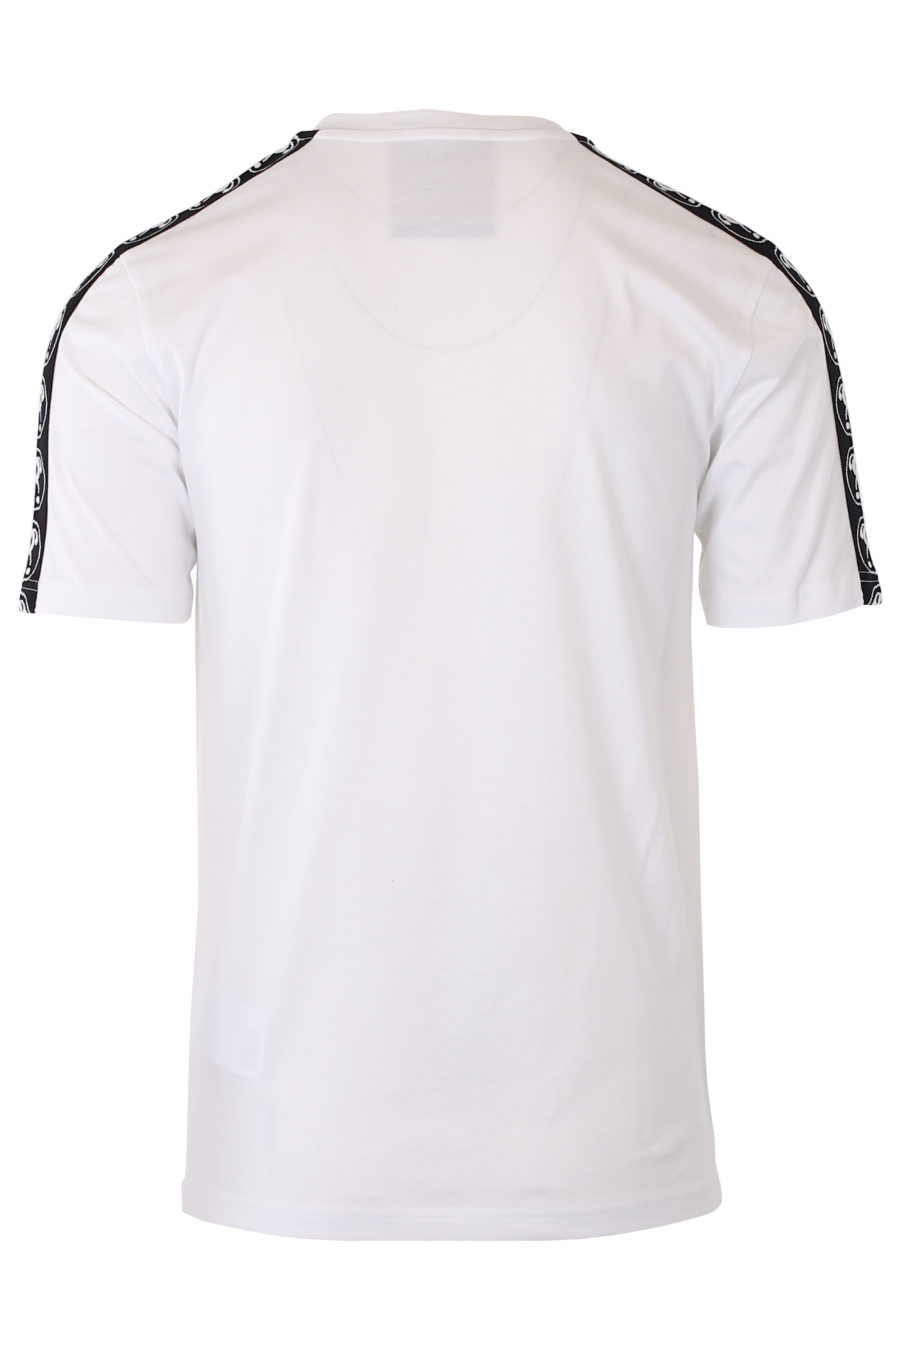 Camiseta blanca con logo doble pregunta pequeño y cinta en mangas - IMG 9333